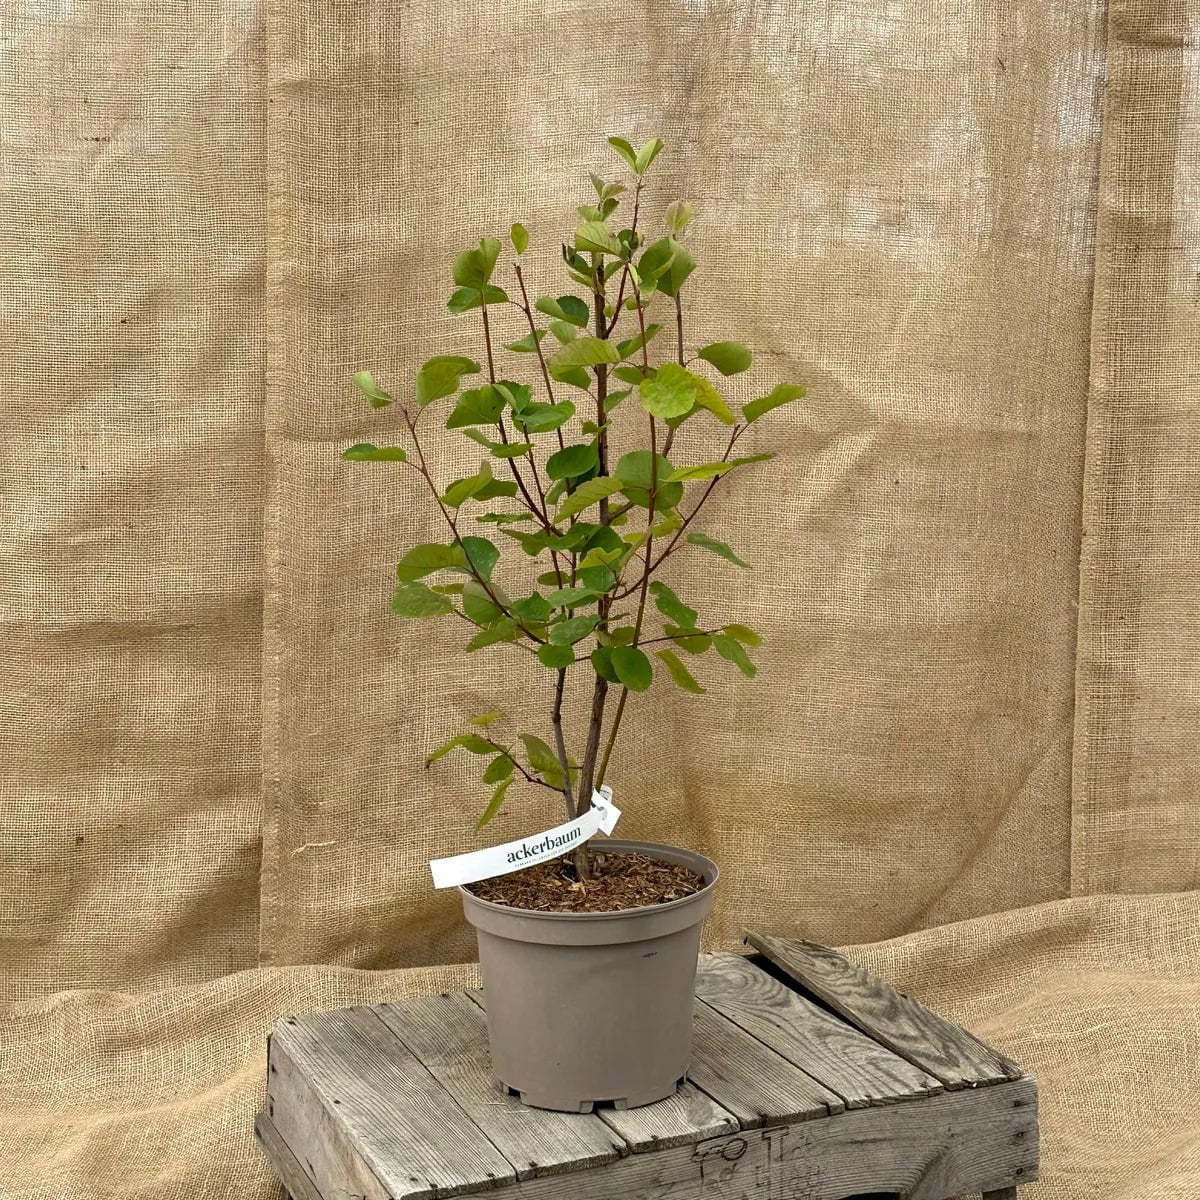 ackerbaum Felsenbirnenstrauch - Honeywood kaufen